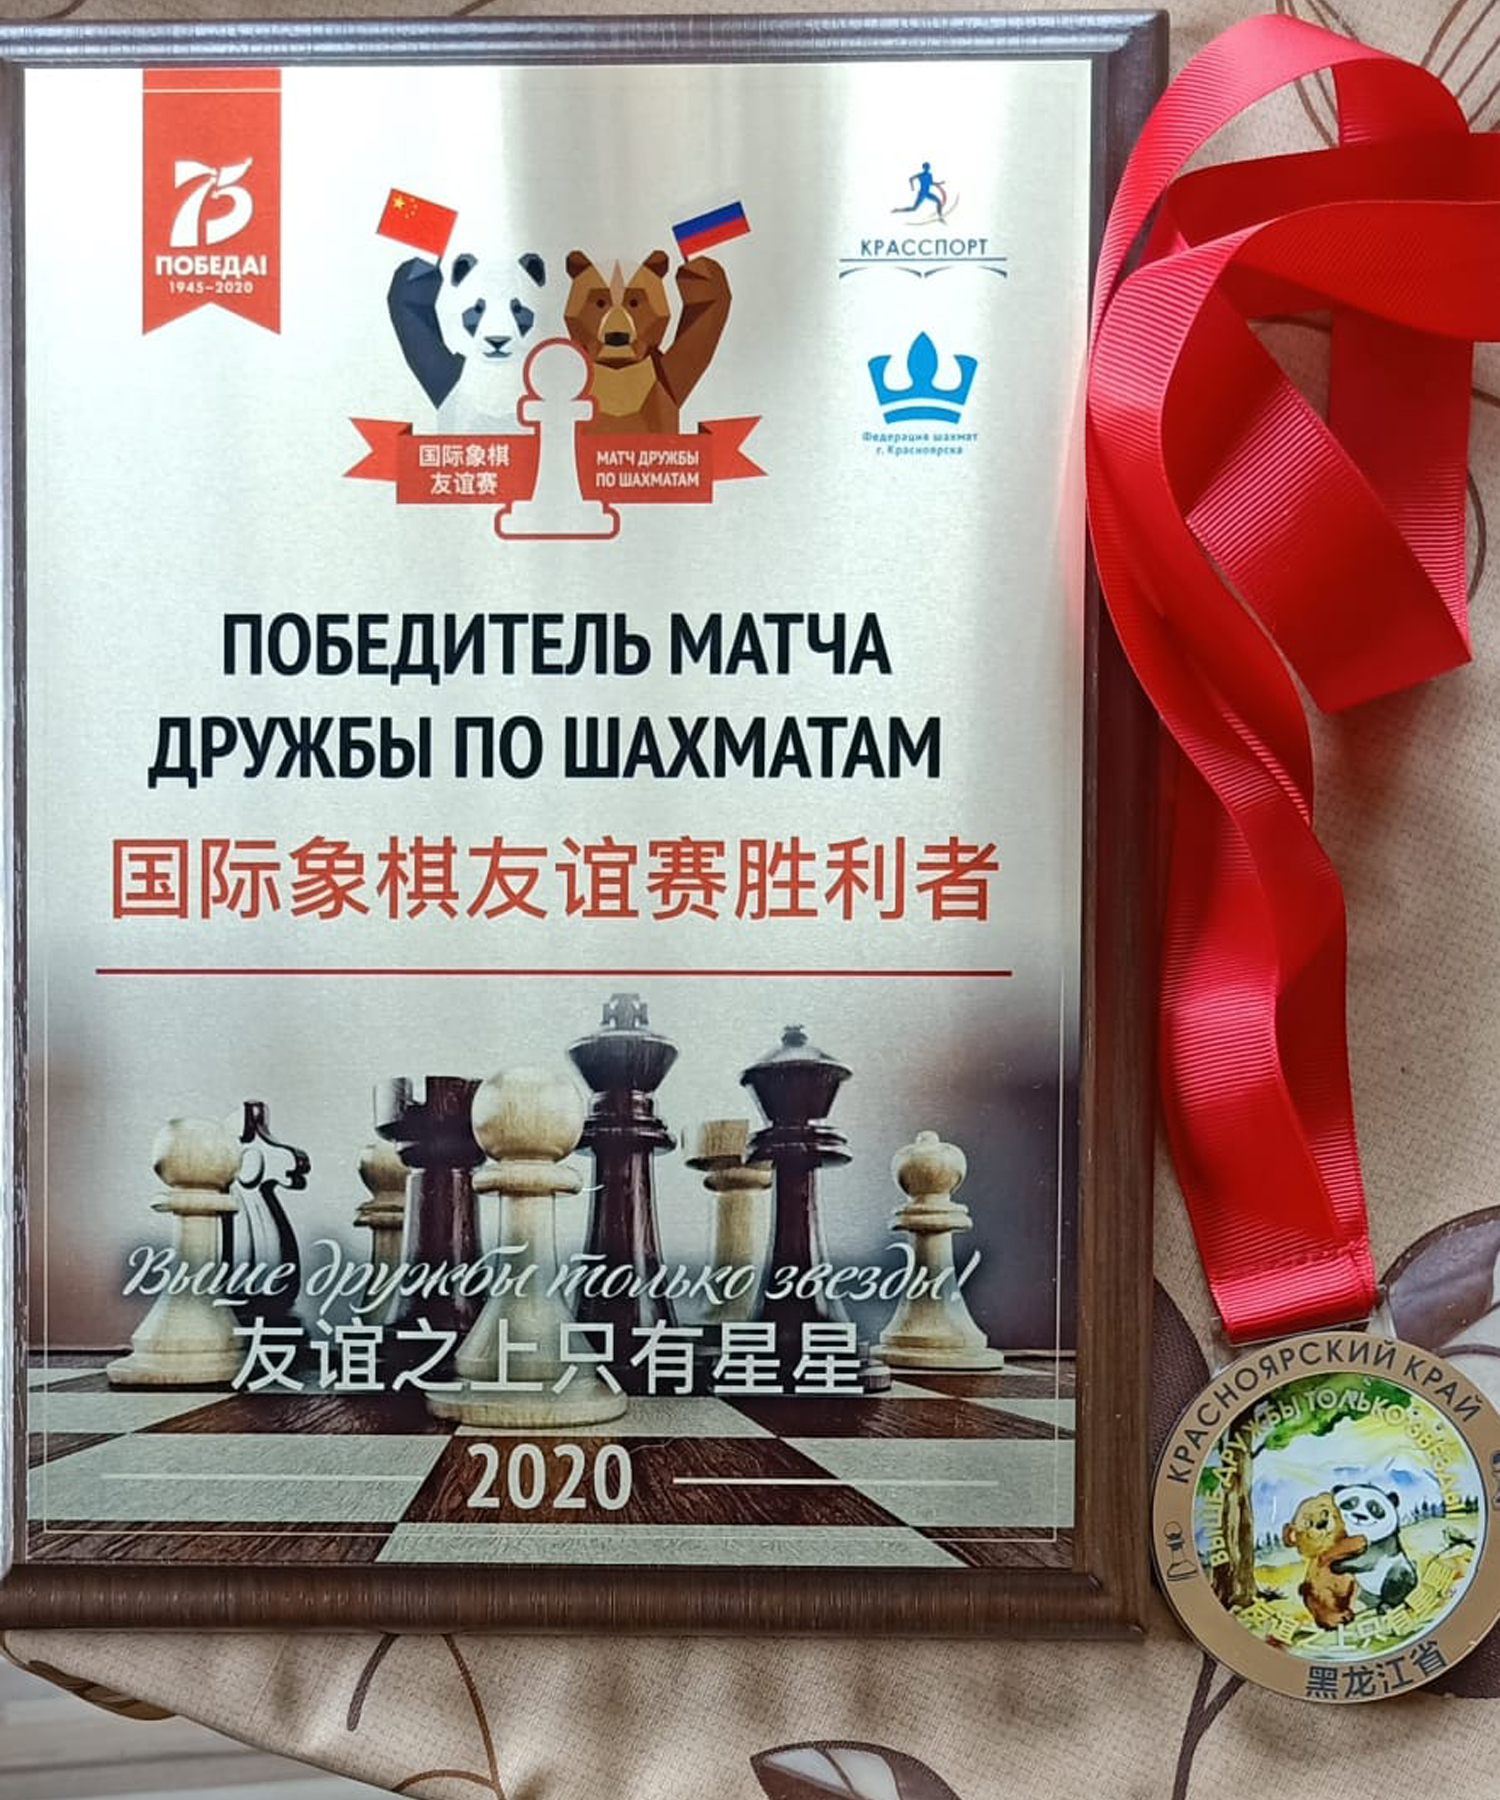 турнир по шахматам итог.jpg